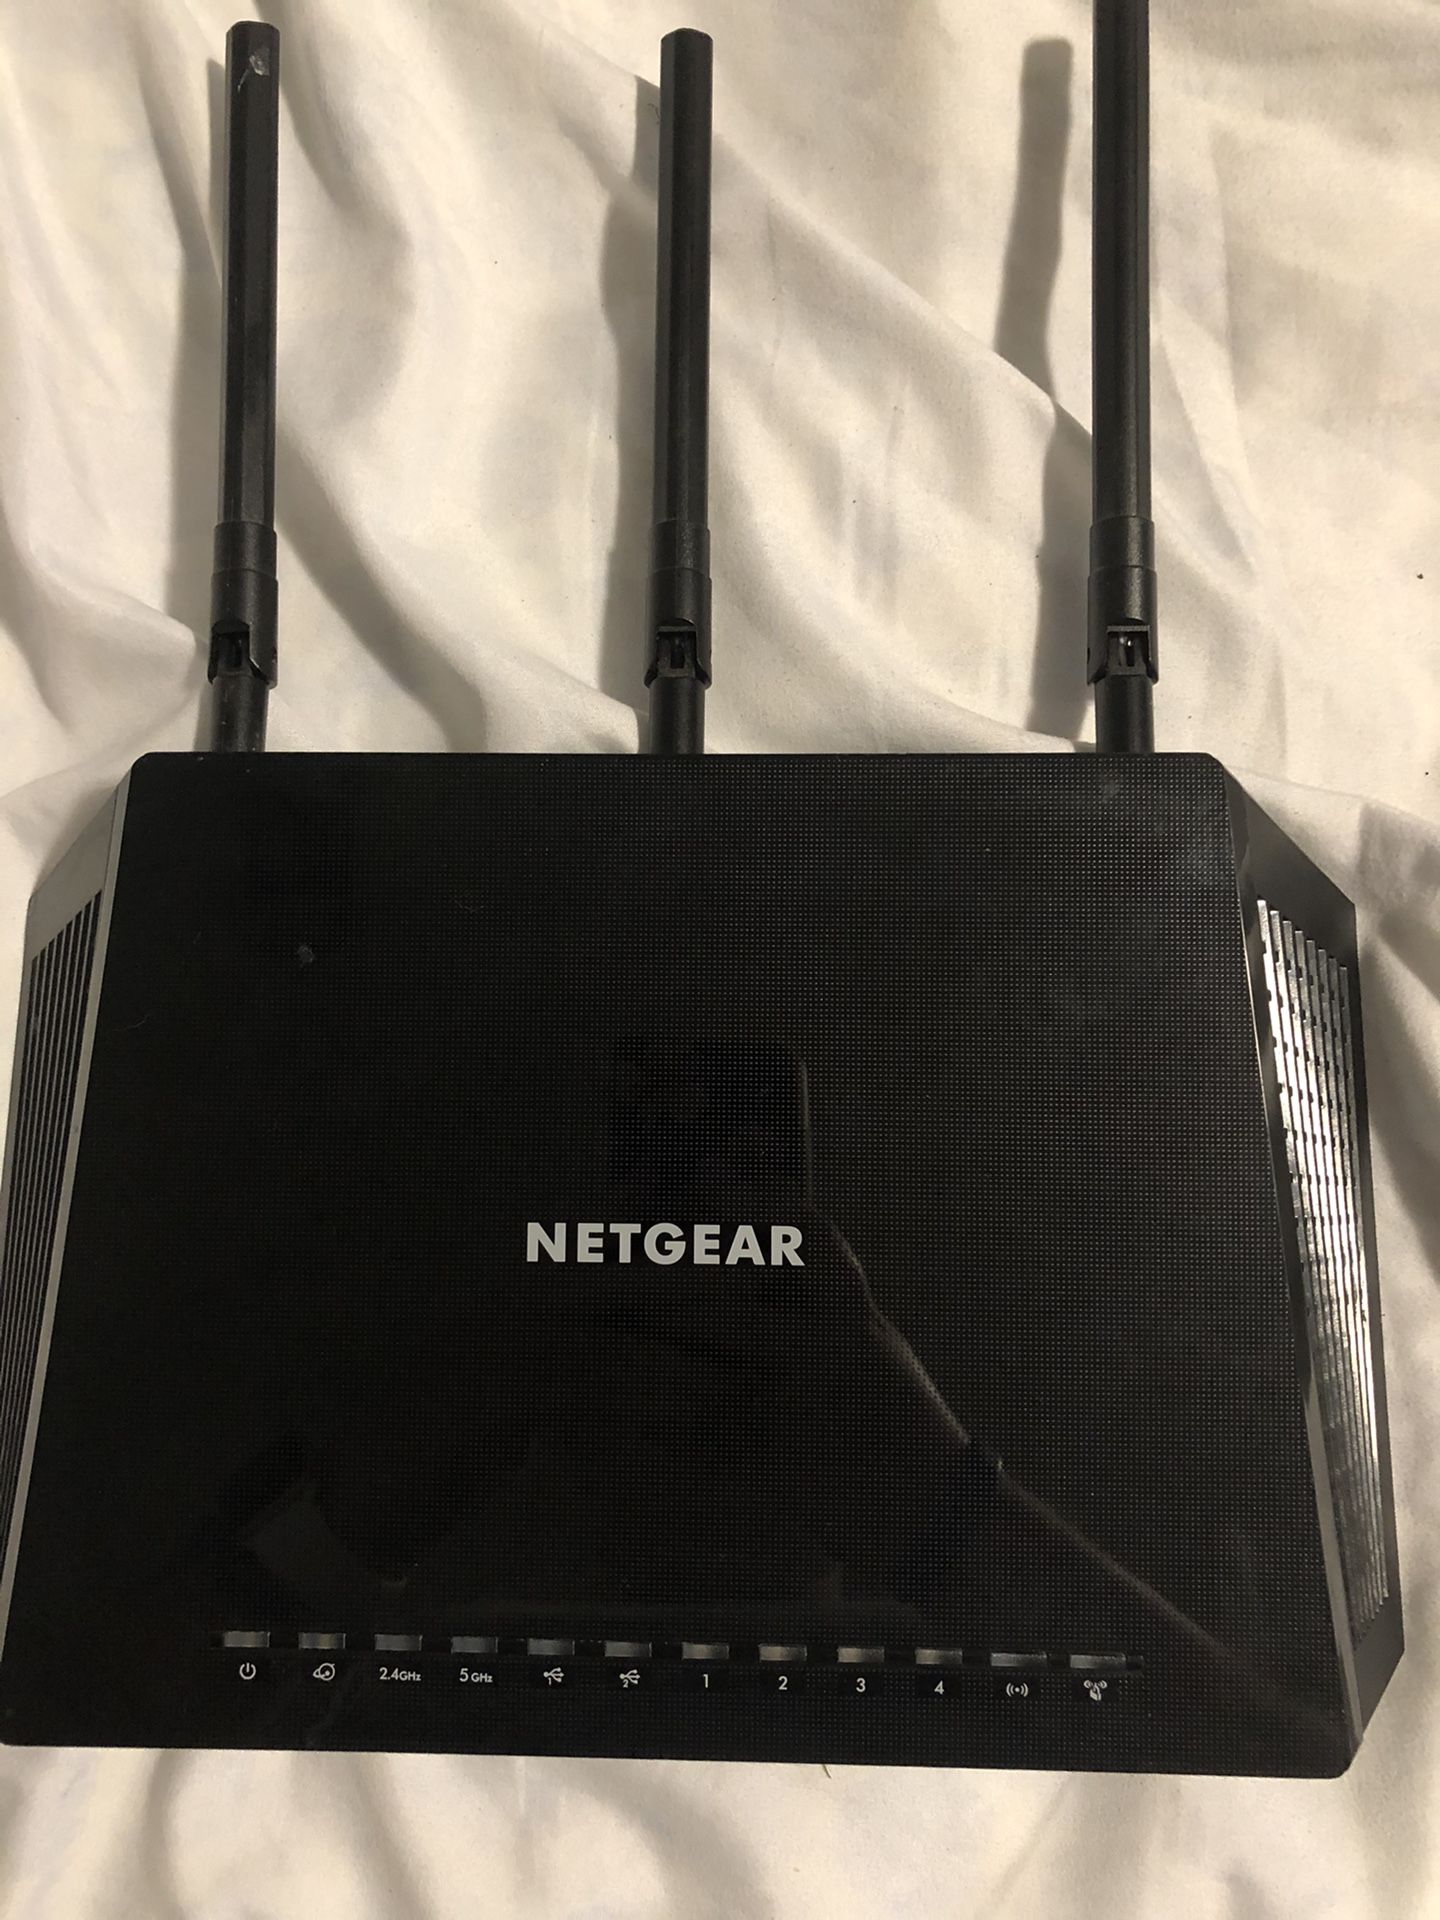 Net gear wifi router